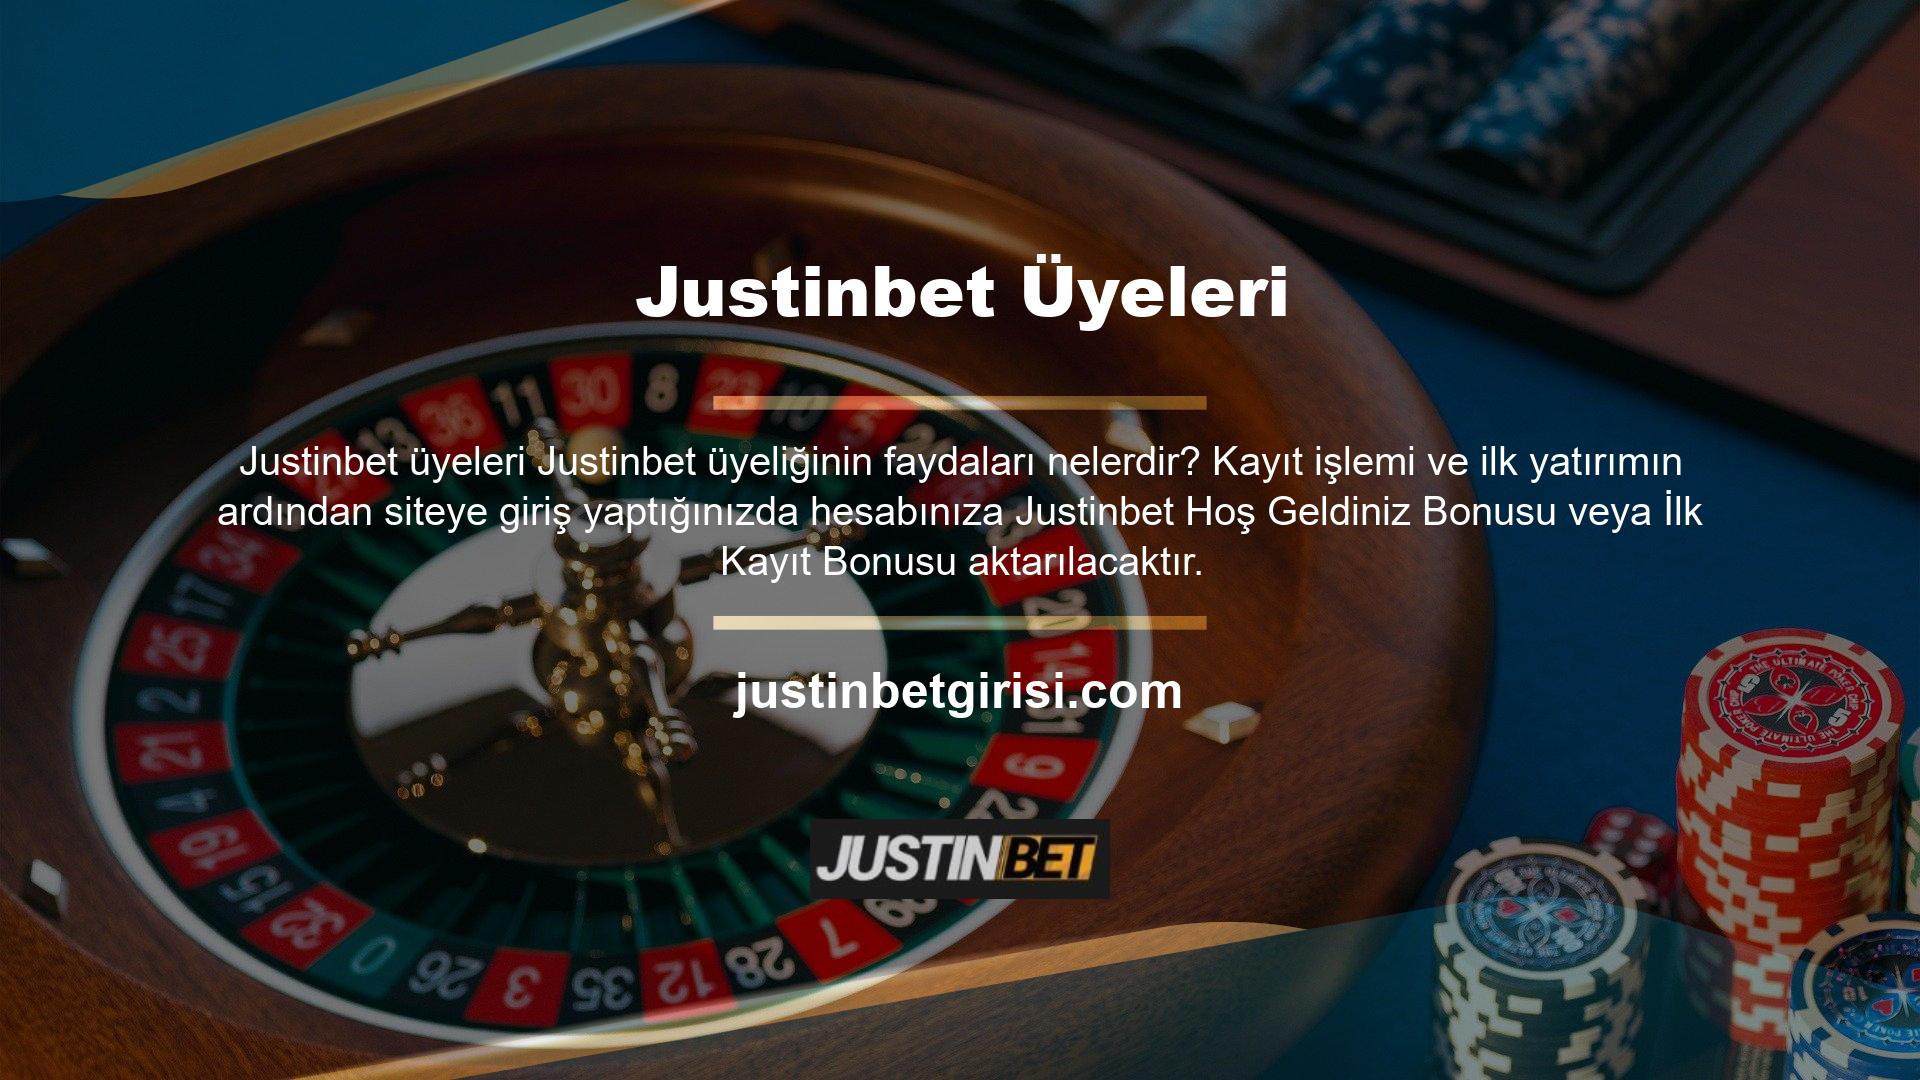 Justinbet, çeşitli hoşgeldin bonusları sunan sertifikalı bir sitedir